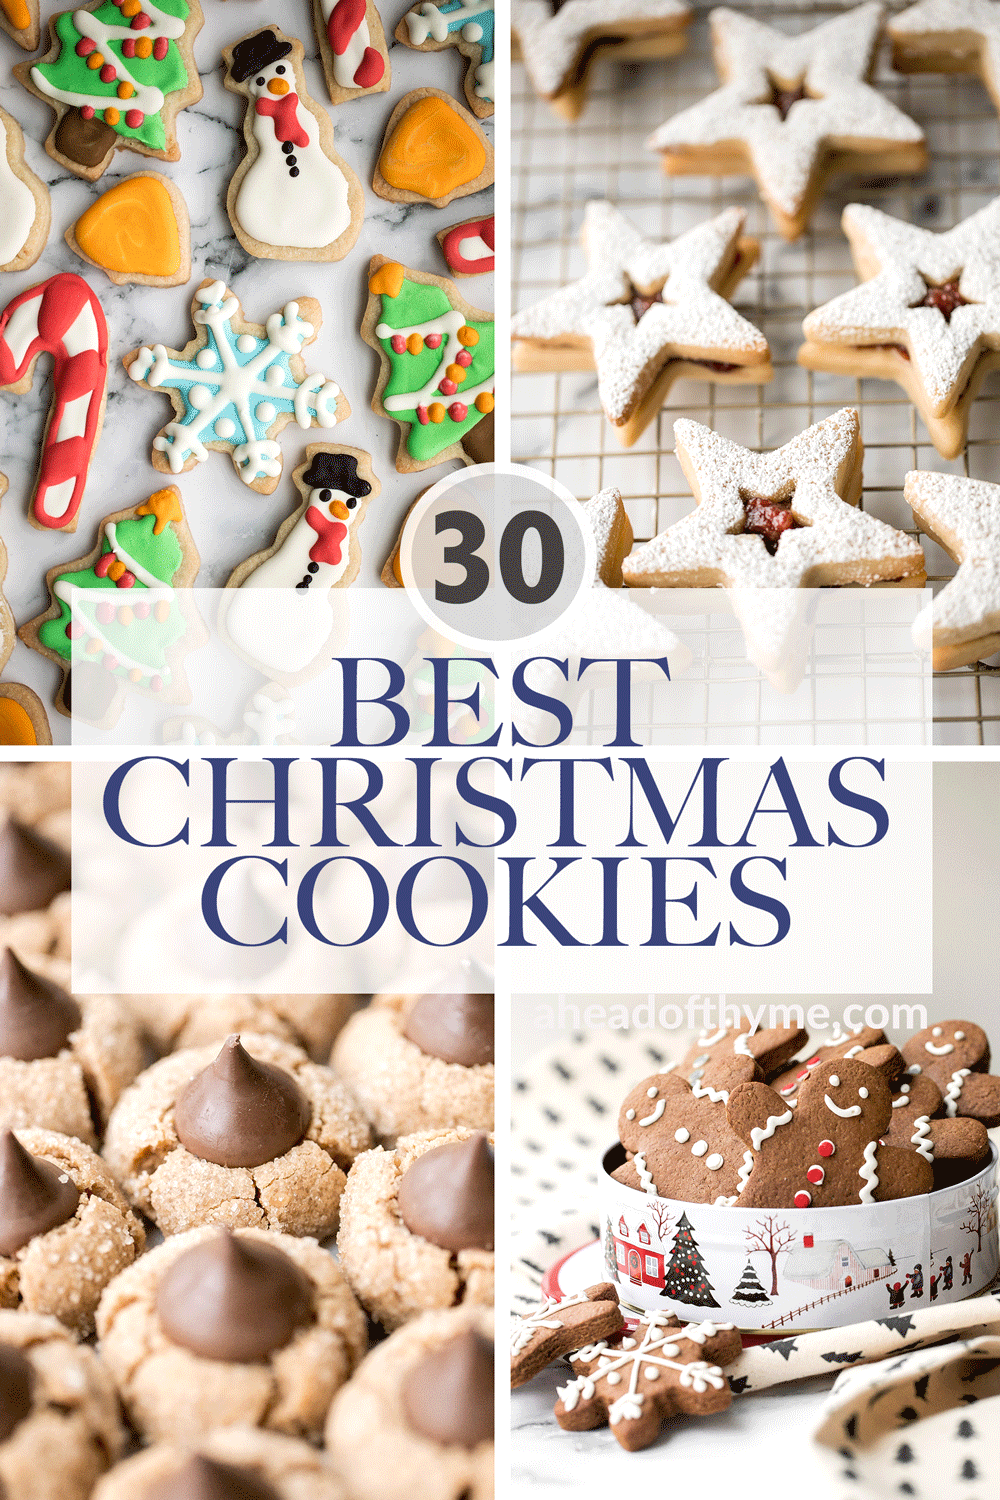 30 Best Christmas Cookies Ahead Of Thyme